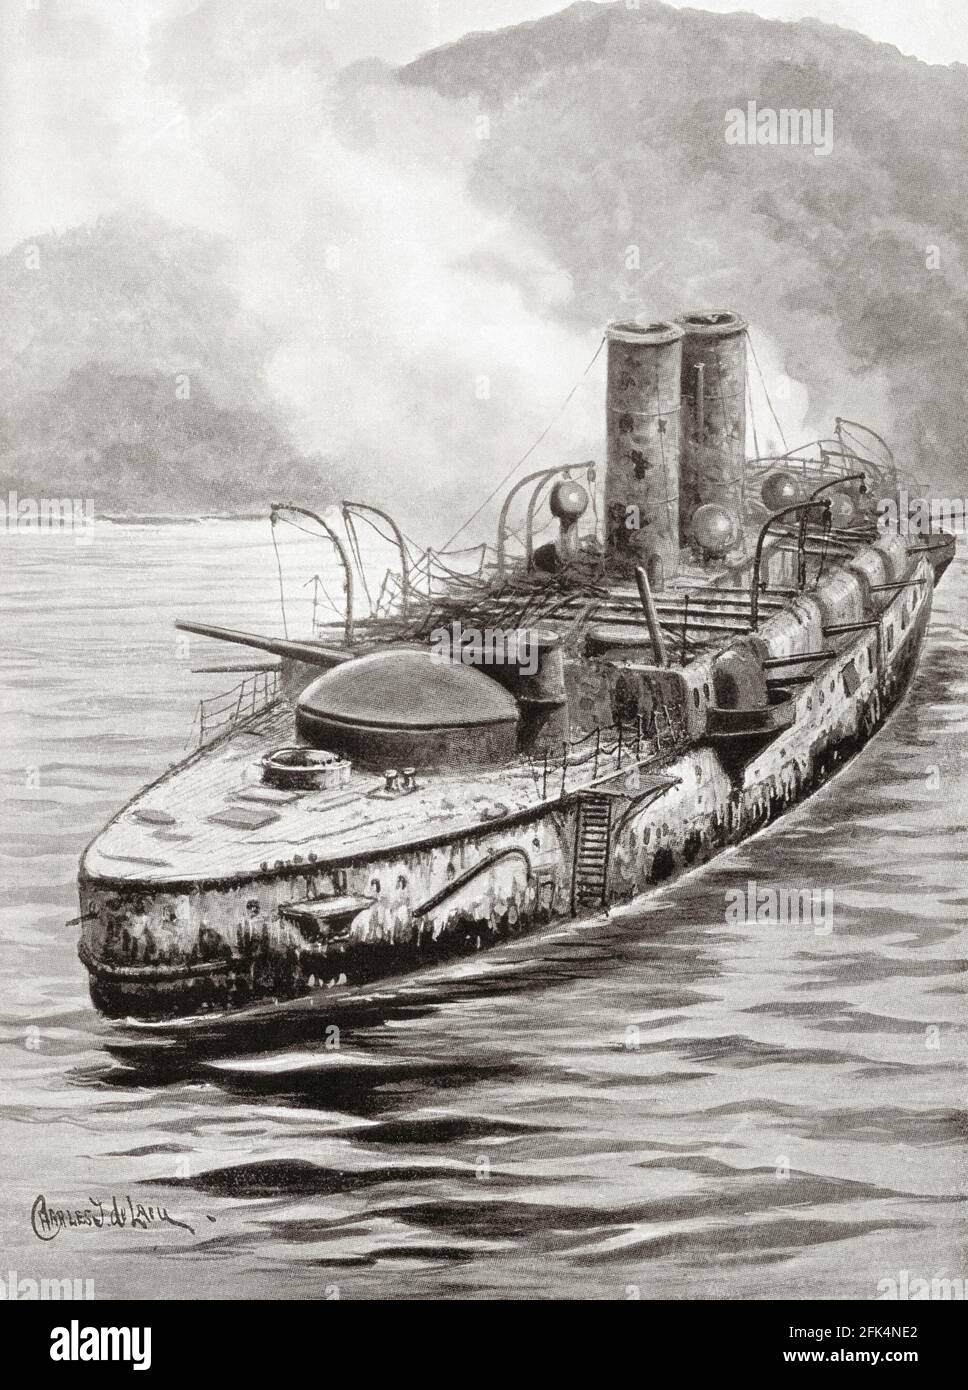 El acorazado español Oquendo después del enfrentamiento naval en la bahía de Manila, durante la Guerra Hispano-Americana de 1898. Foto de stock